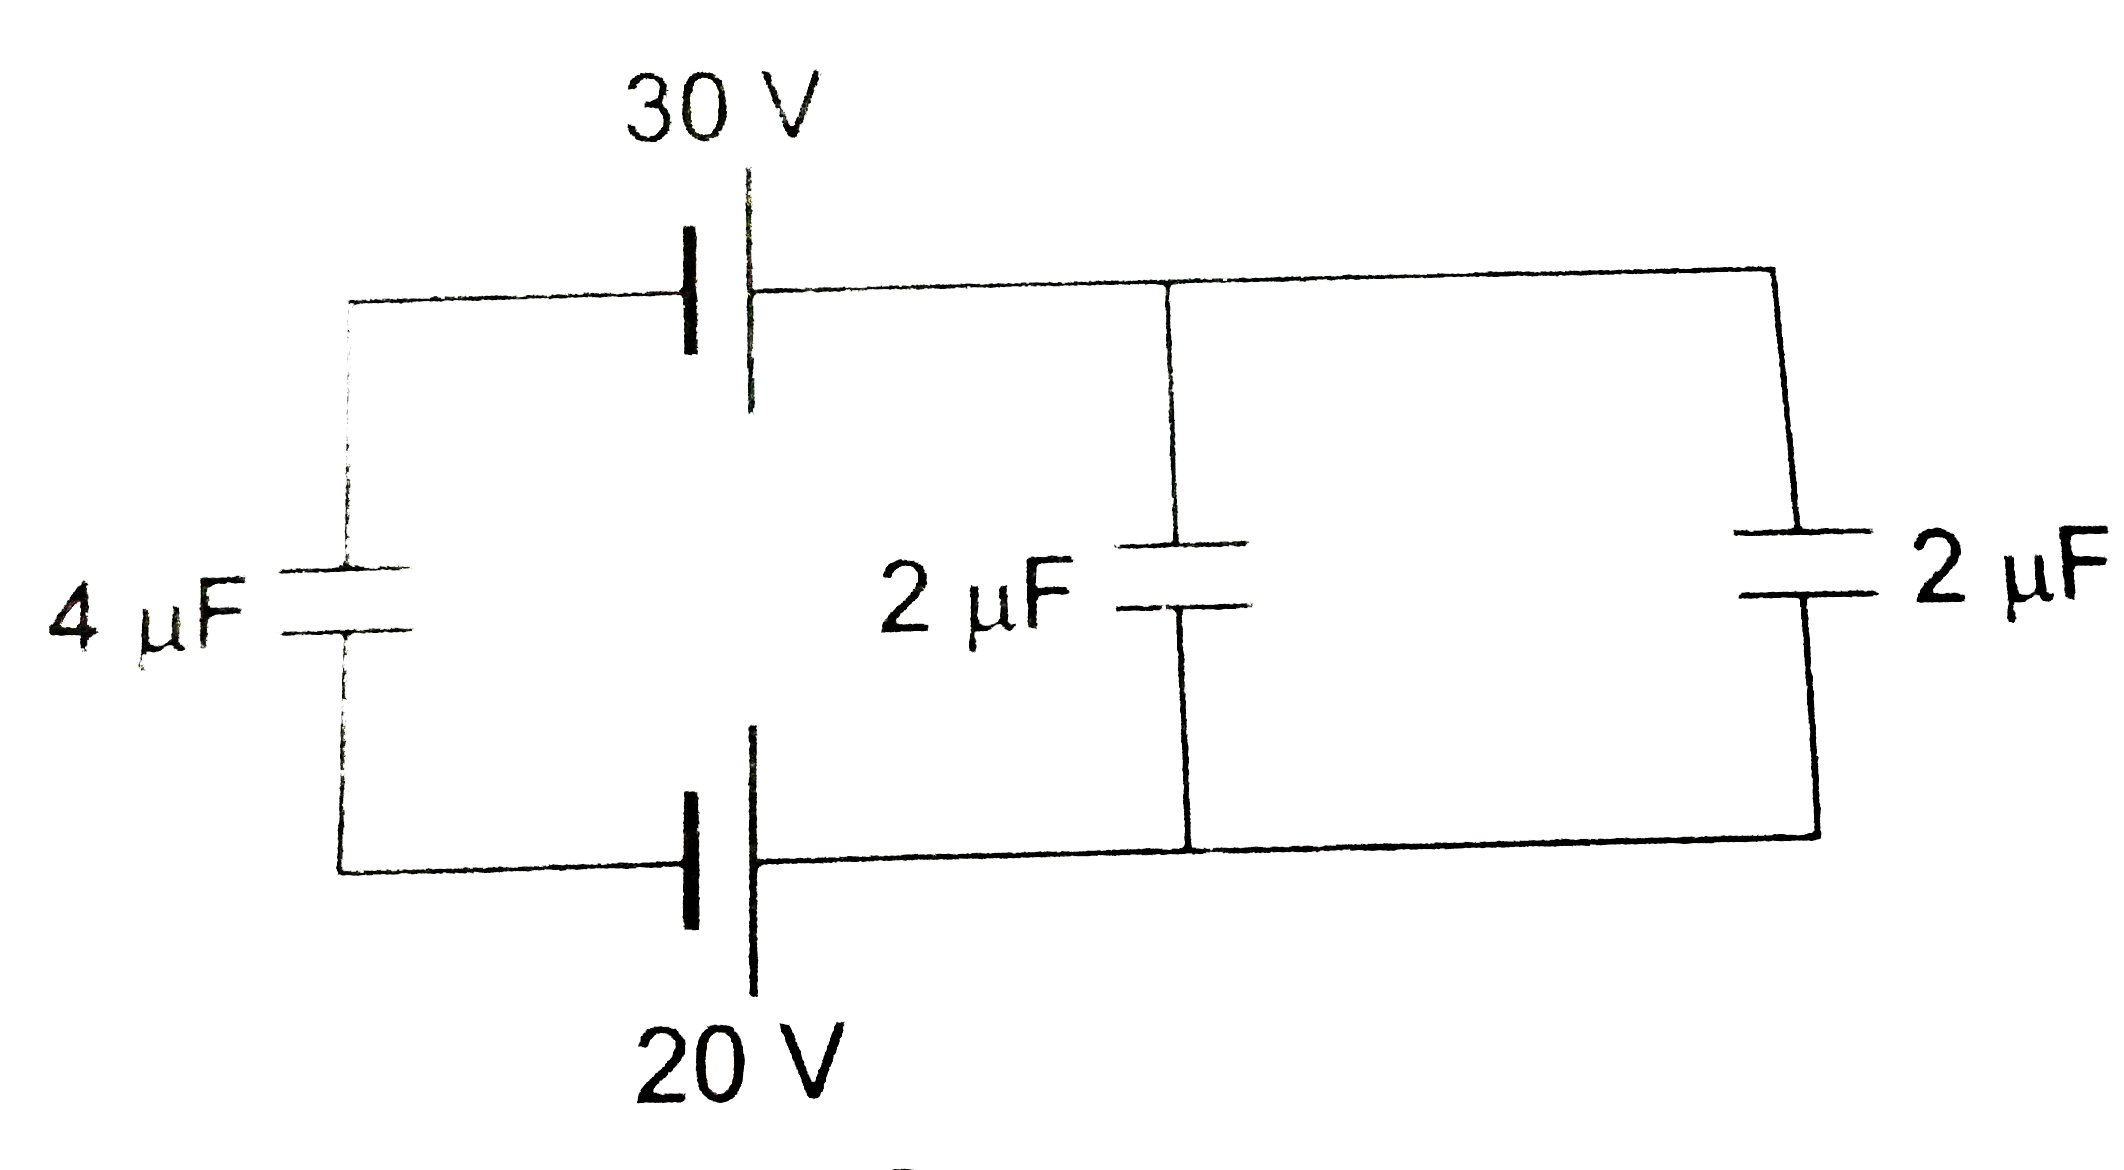 चित्र में दिए गए परिपथ में 4 muF धारिता के संधारित्र पर स्थायी स्थिति में संचित आवेश है